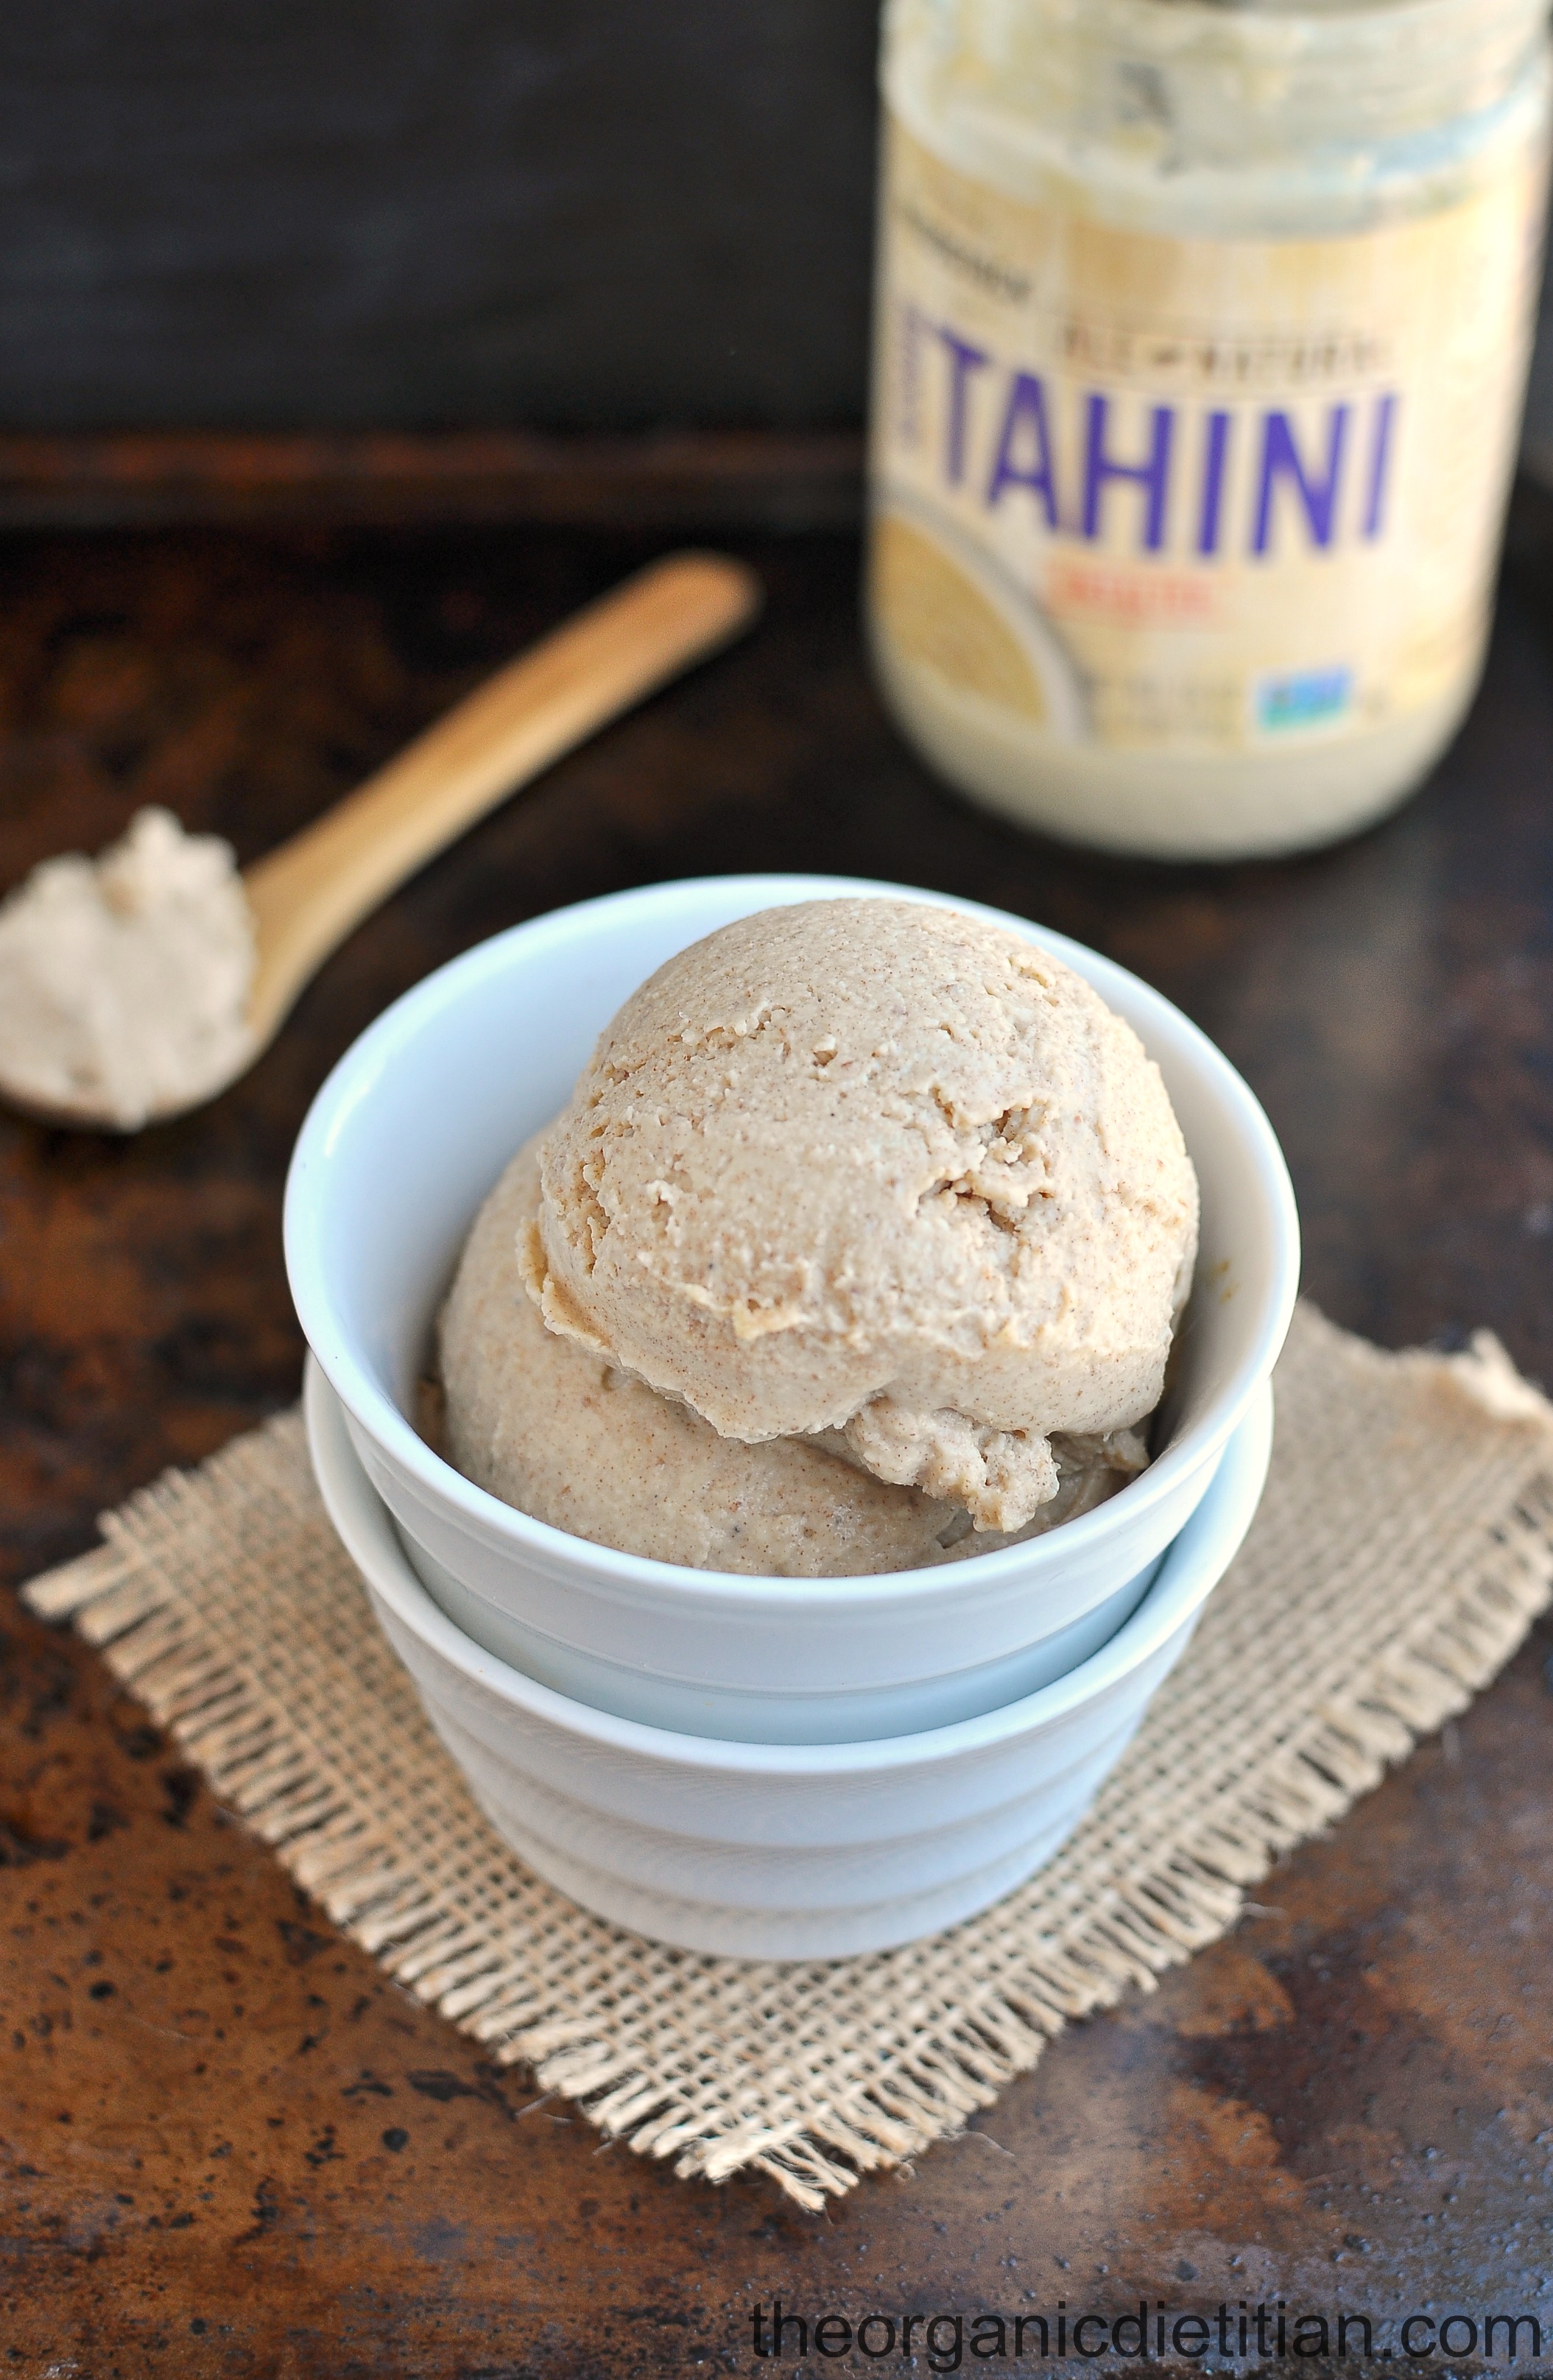 https://theorganicdietitian.com/wp-content/uploads/2015/06/Tahini-cardamom-ice-cream.jpg